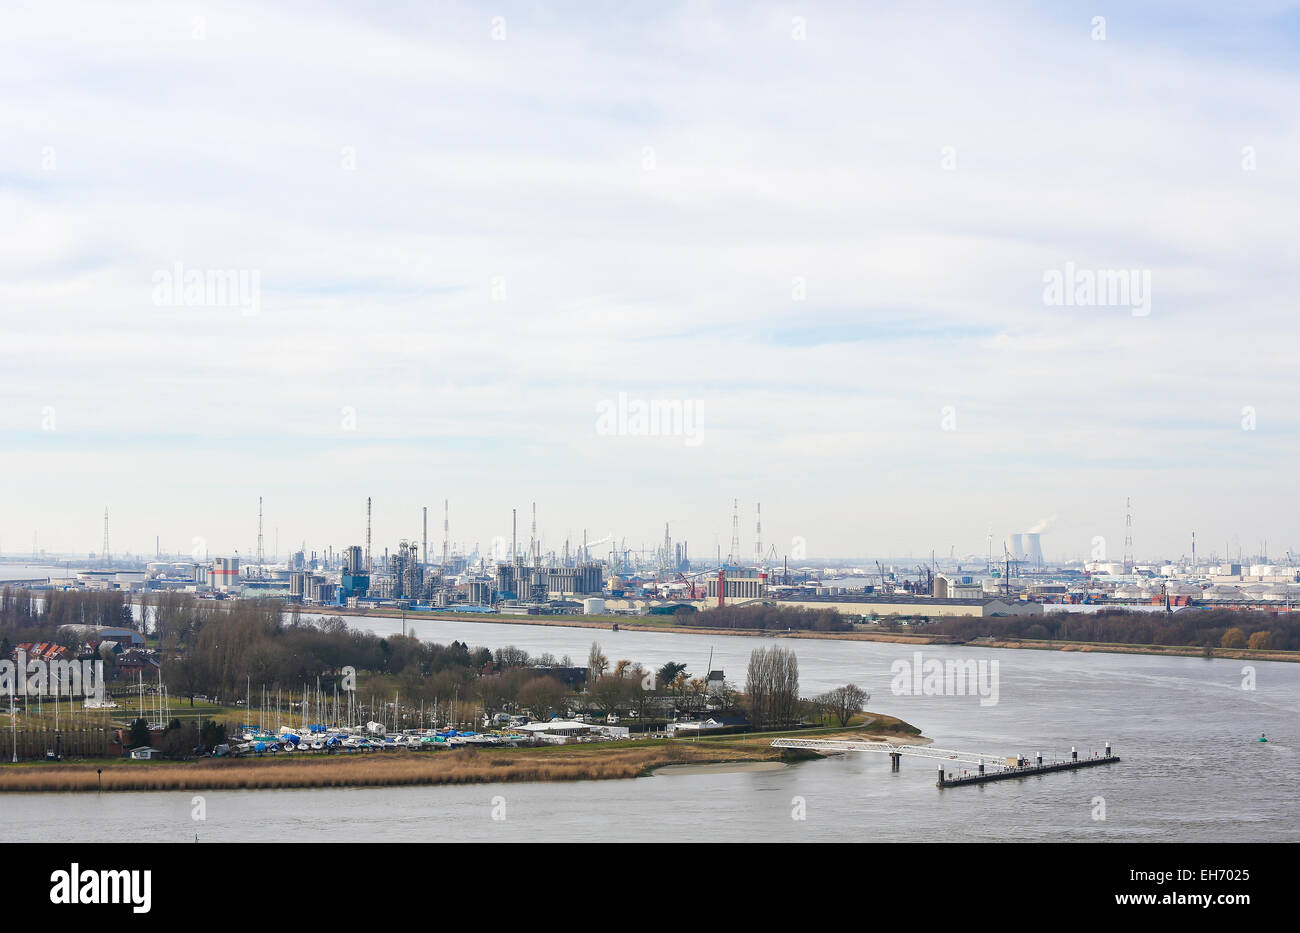 Blick auf eine Öl-Raffinerie von der Schelde im Hafen von Antwerpen, Belgien. Antwerpen ist der zweitgrößte Hafen Europas Stockfoto